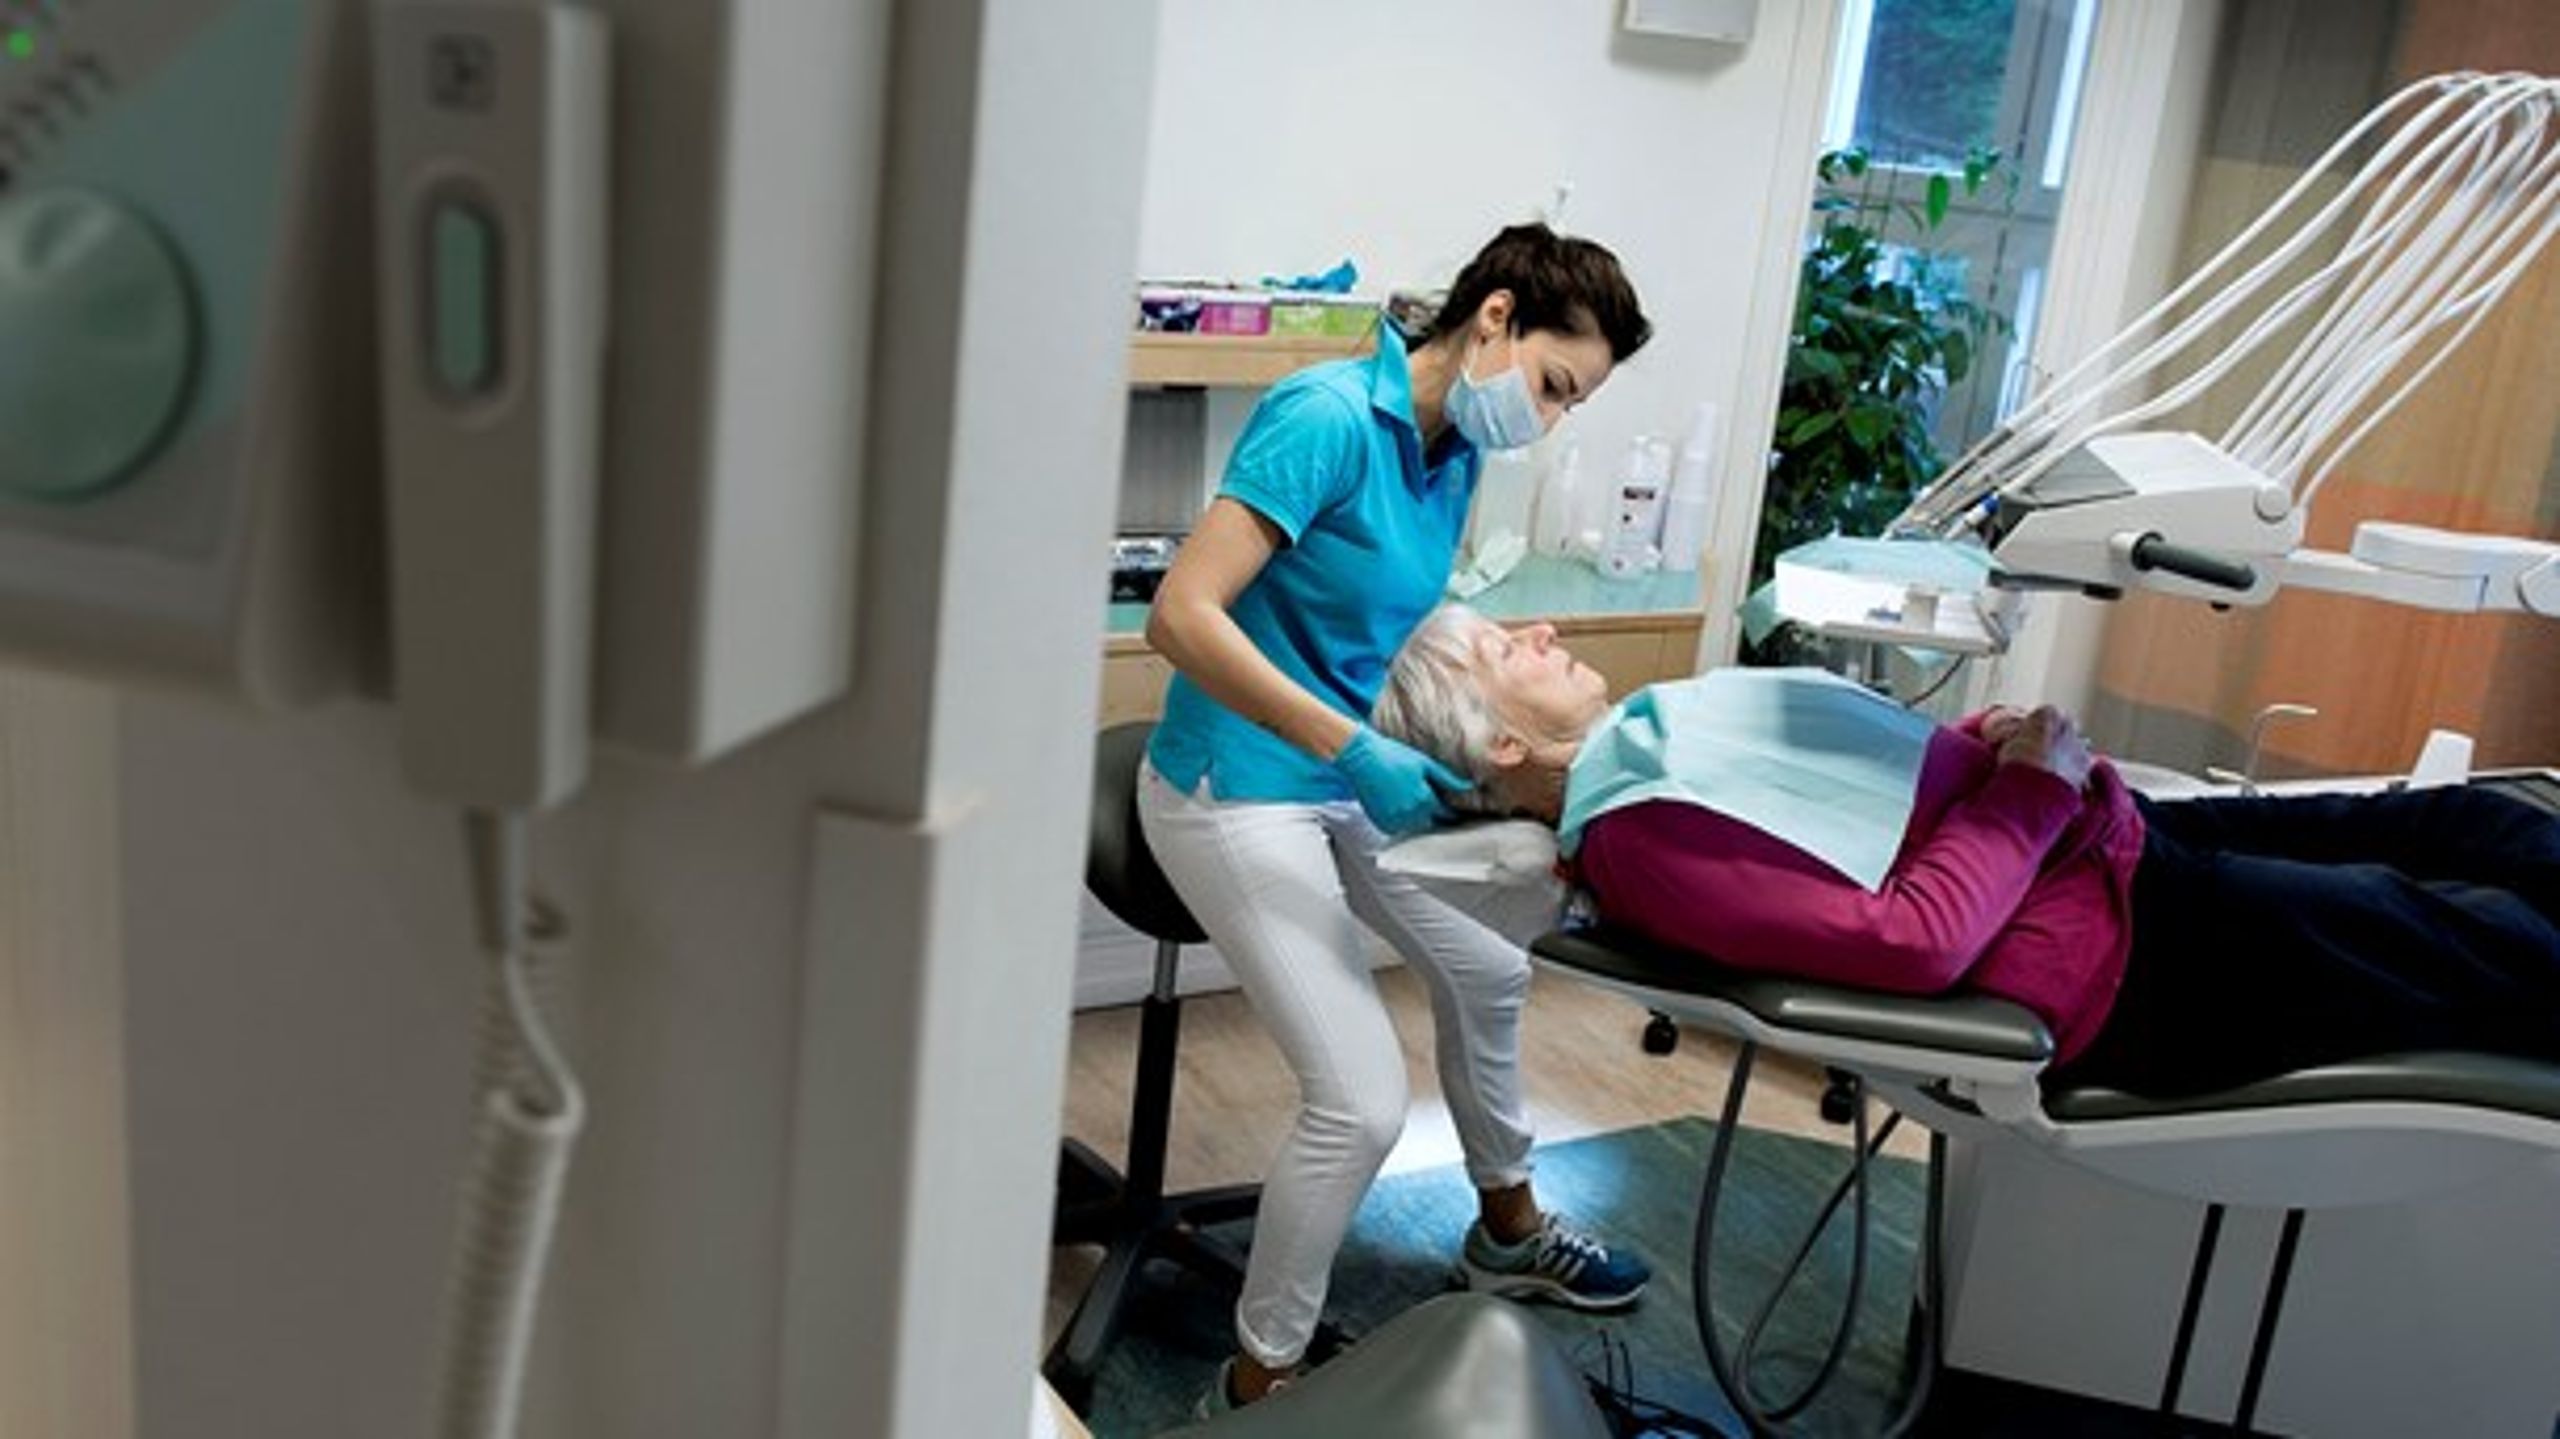 Der er ingen, der får sundere tænder af at komme til kontrol på en tandklinik en gang om året. Det handler om at skabe gode vaner tidligt, hvis man vil uligheden til livs, skriver&nbsp;Elisabeth Gregersen.<br>